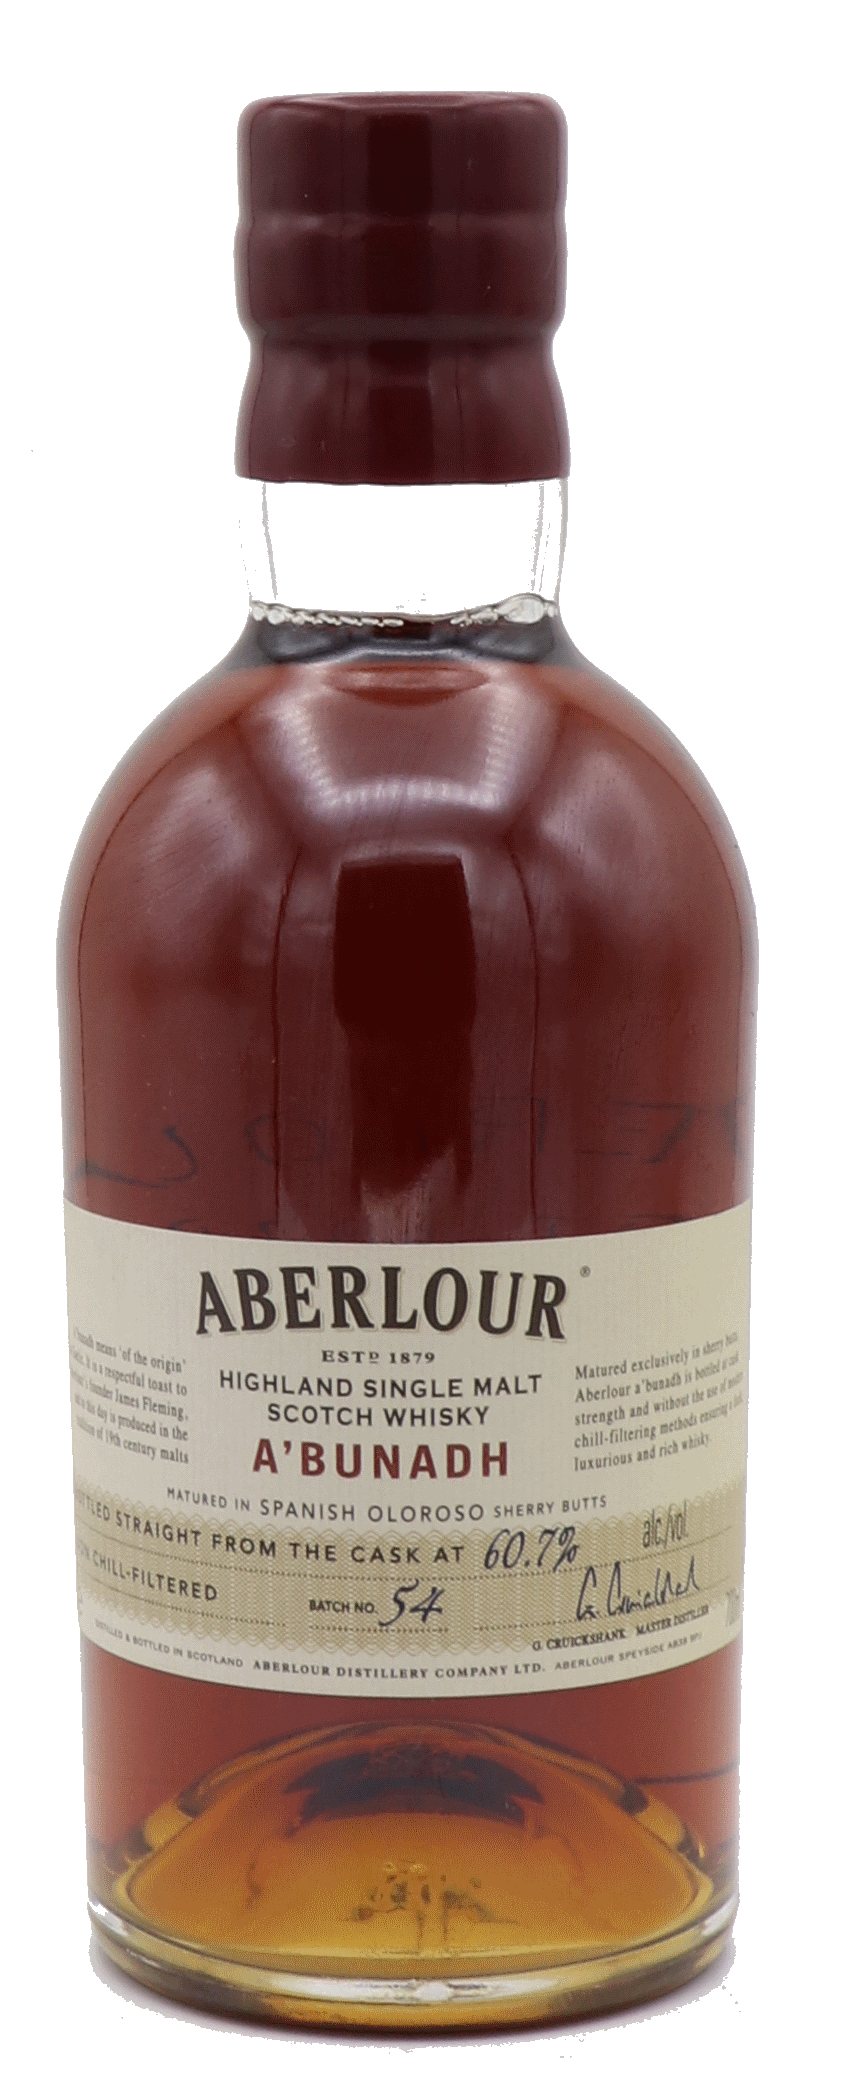 Aberlour A'Bunadh Highland Single Malt Scotch Whisky